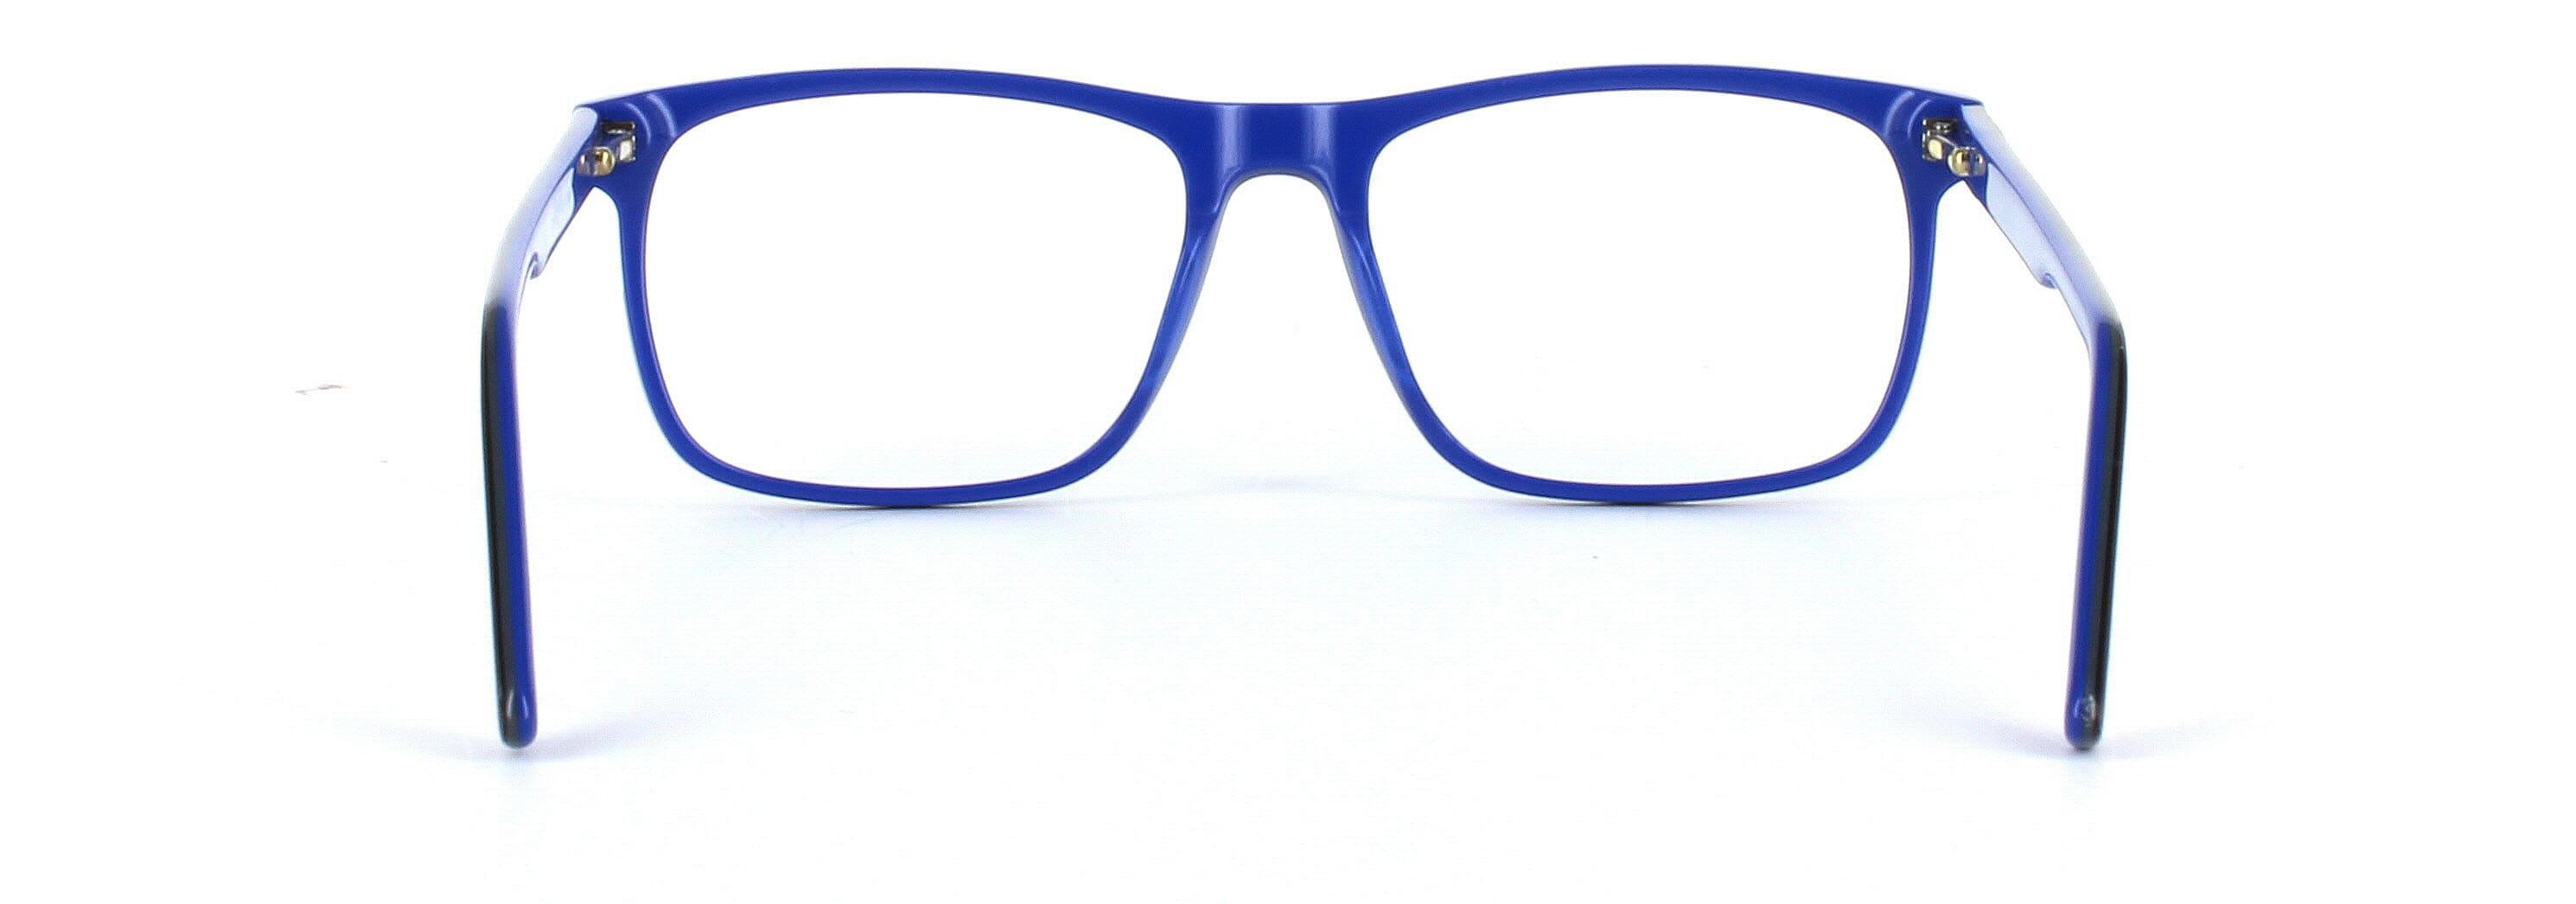 Ashington Black Full Rim Square Plastic Glasses - Image View 3